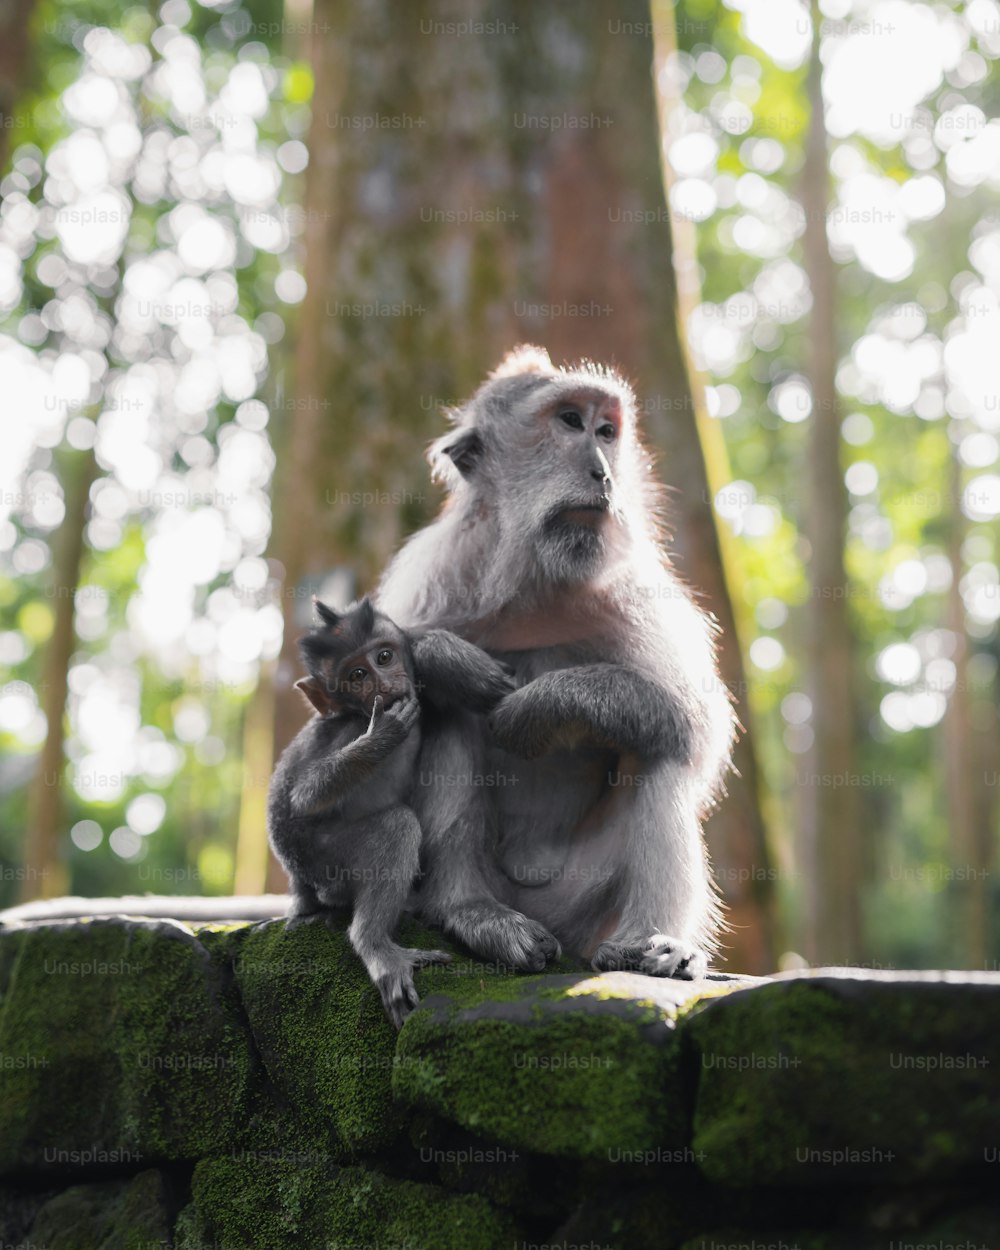 바위 위에 앉아 있는 엄마와 아기 원숭이